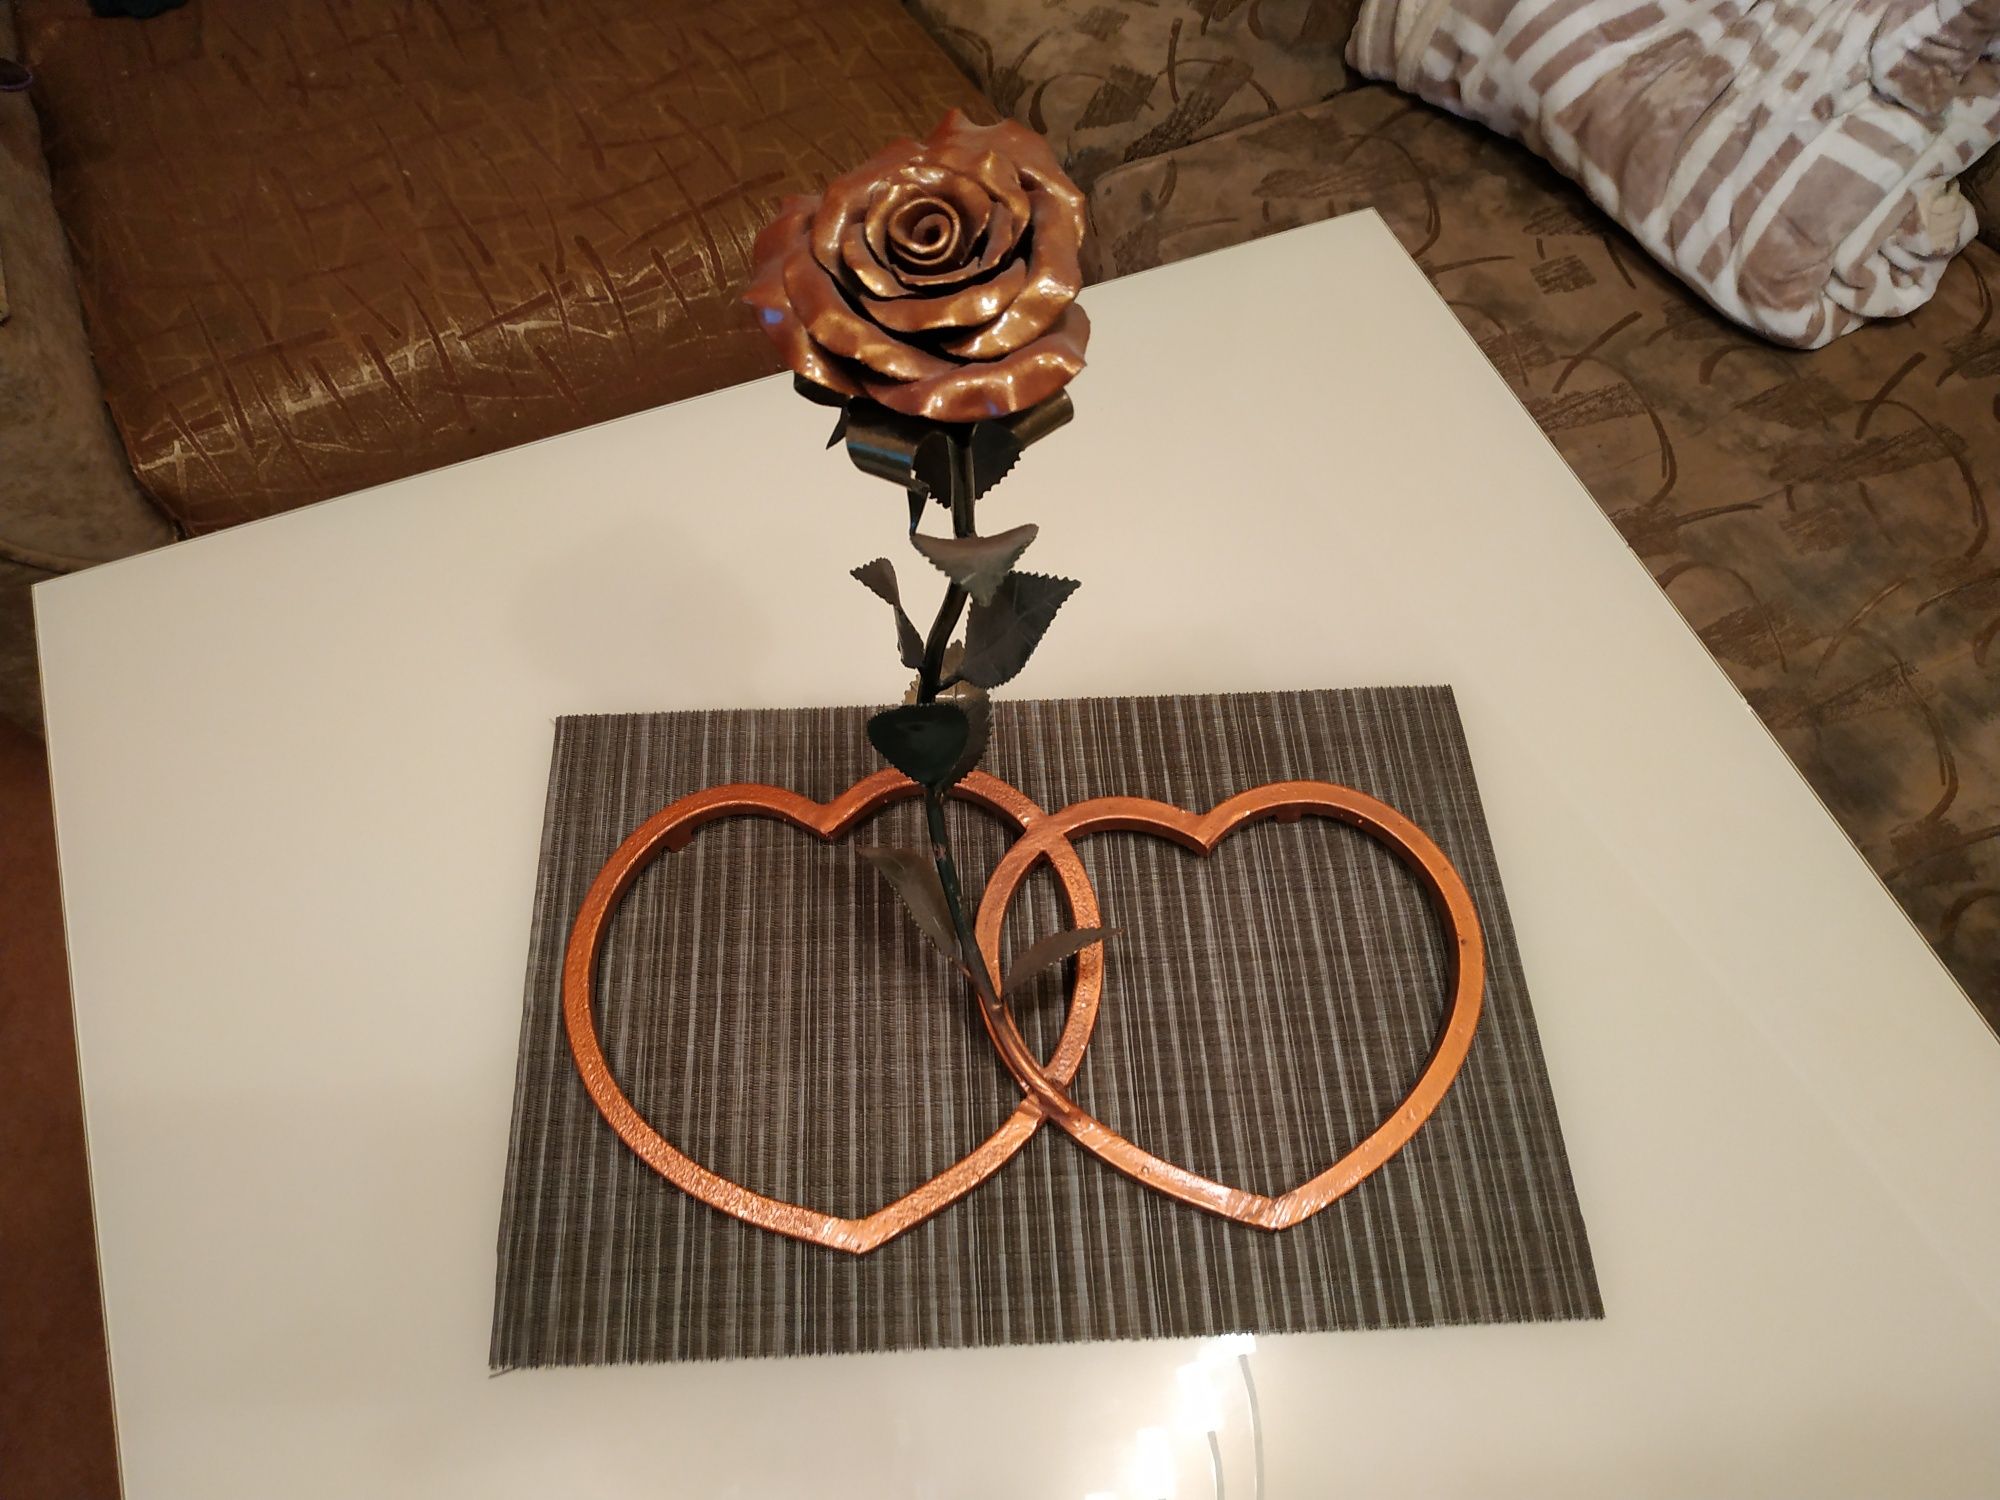 Кованая роза с подставкой, идея для подарка